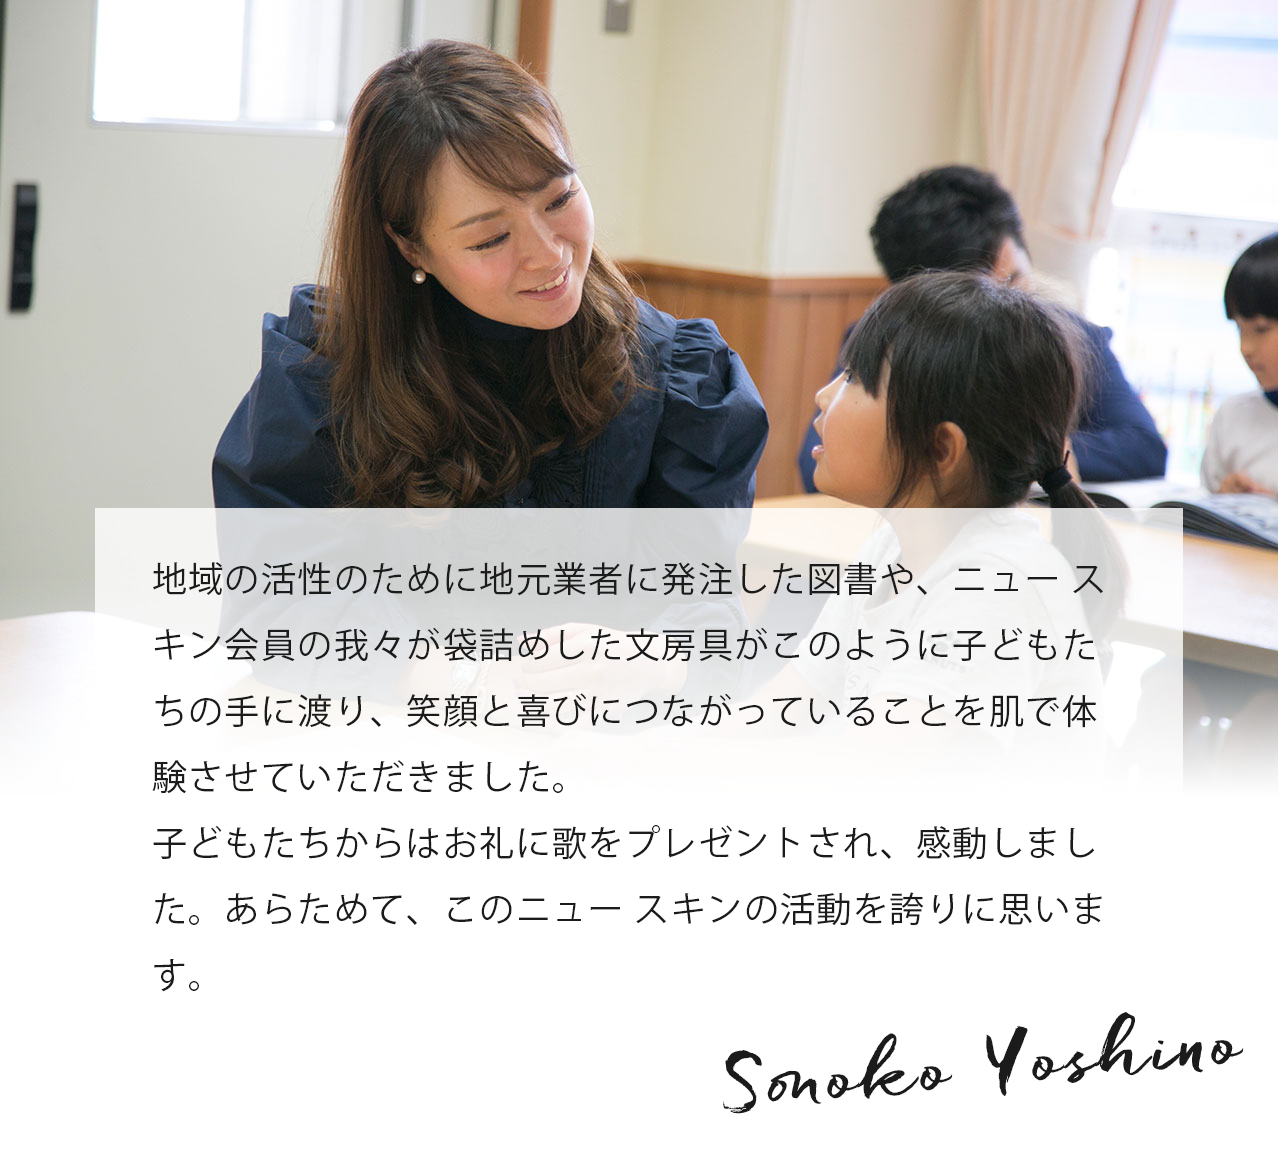 小学生のころは、いろんなことに悩んだり、興味をもち知りたくなったりしますが、そんなときに一番身近で頼りになるのが本です。津波で校舎が流され本を失った小学校に、本を贈呈する！ 凄く意味のあることだと思います。Sonoko Yoshino